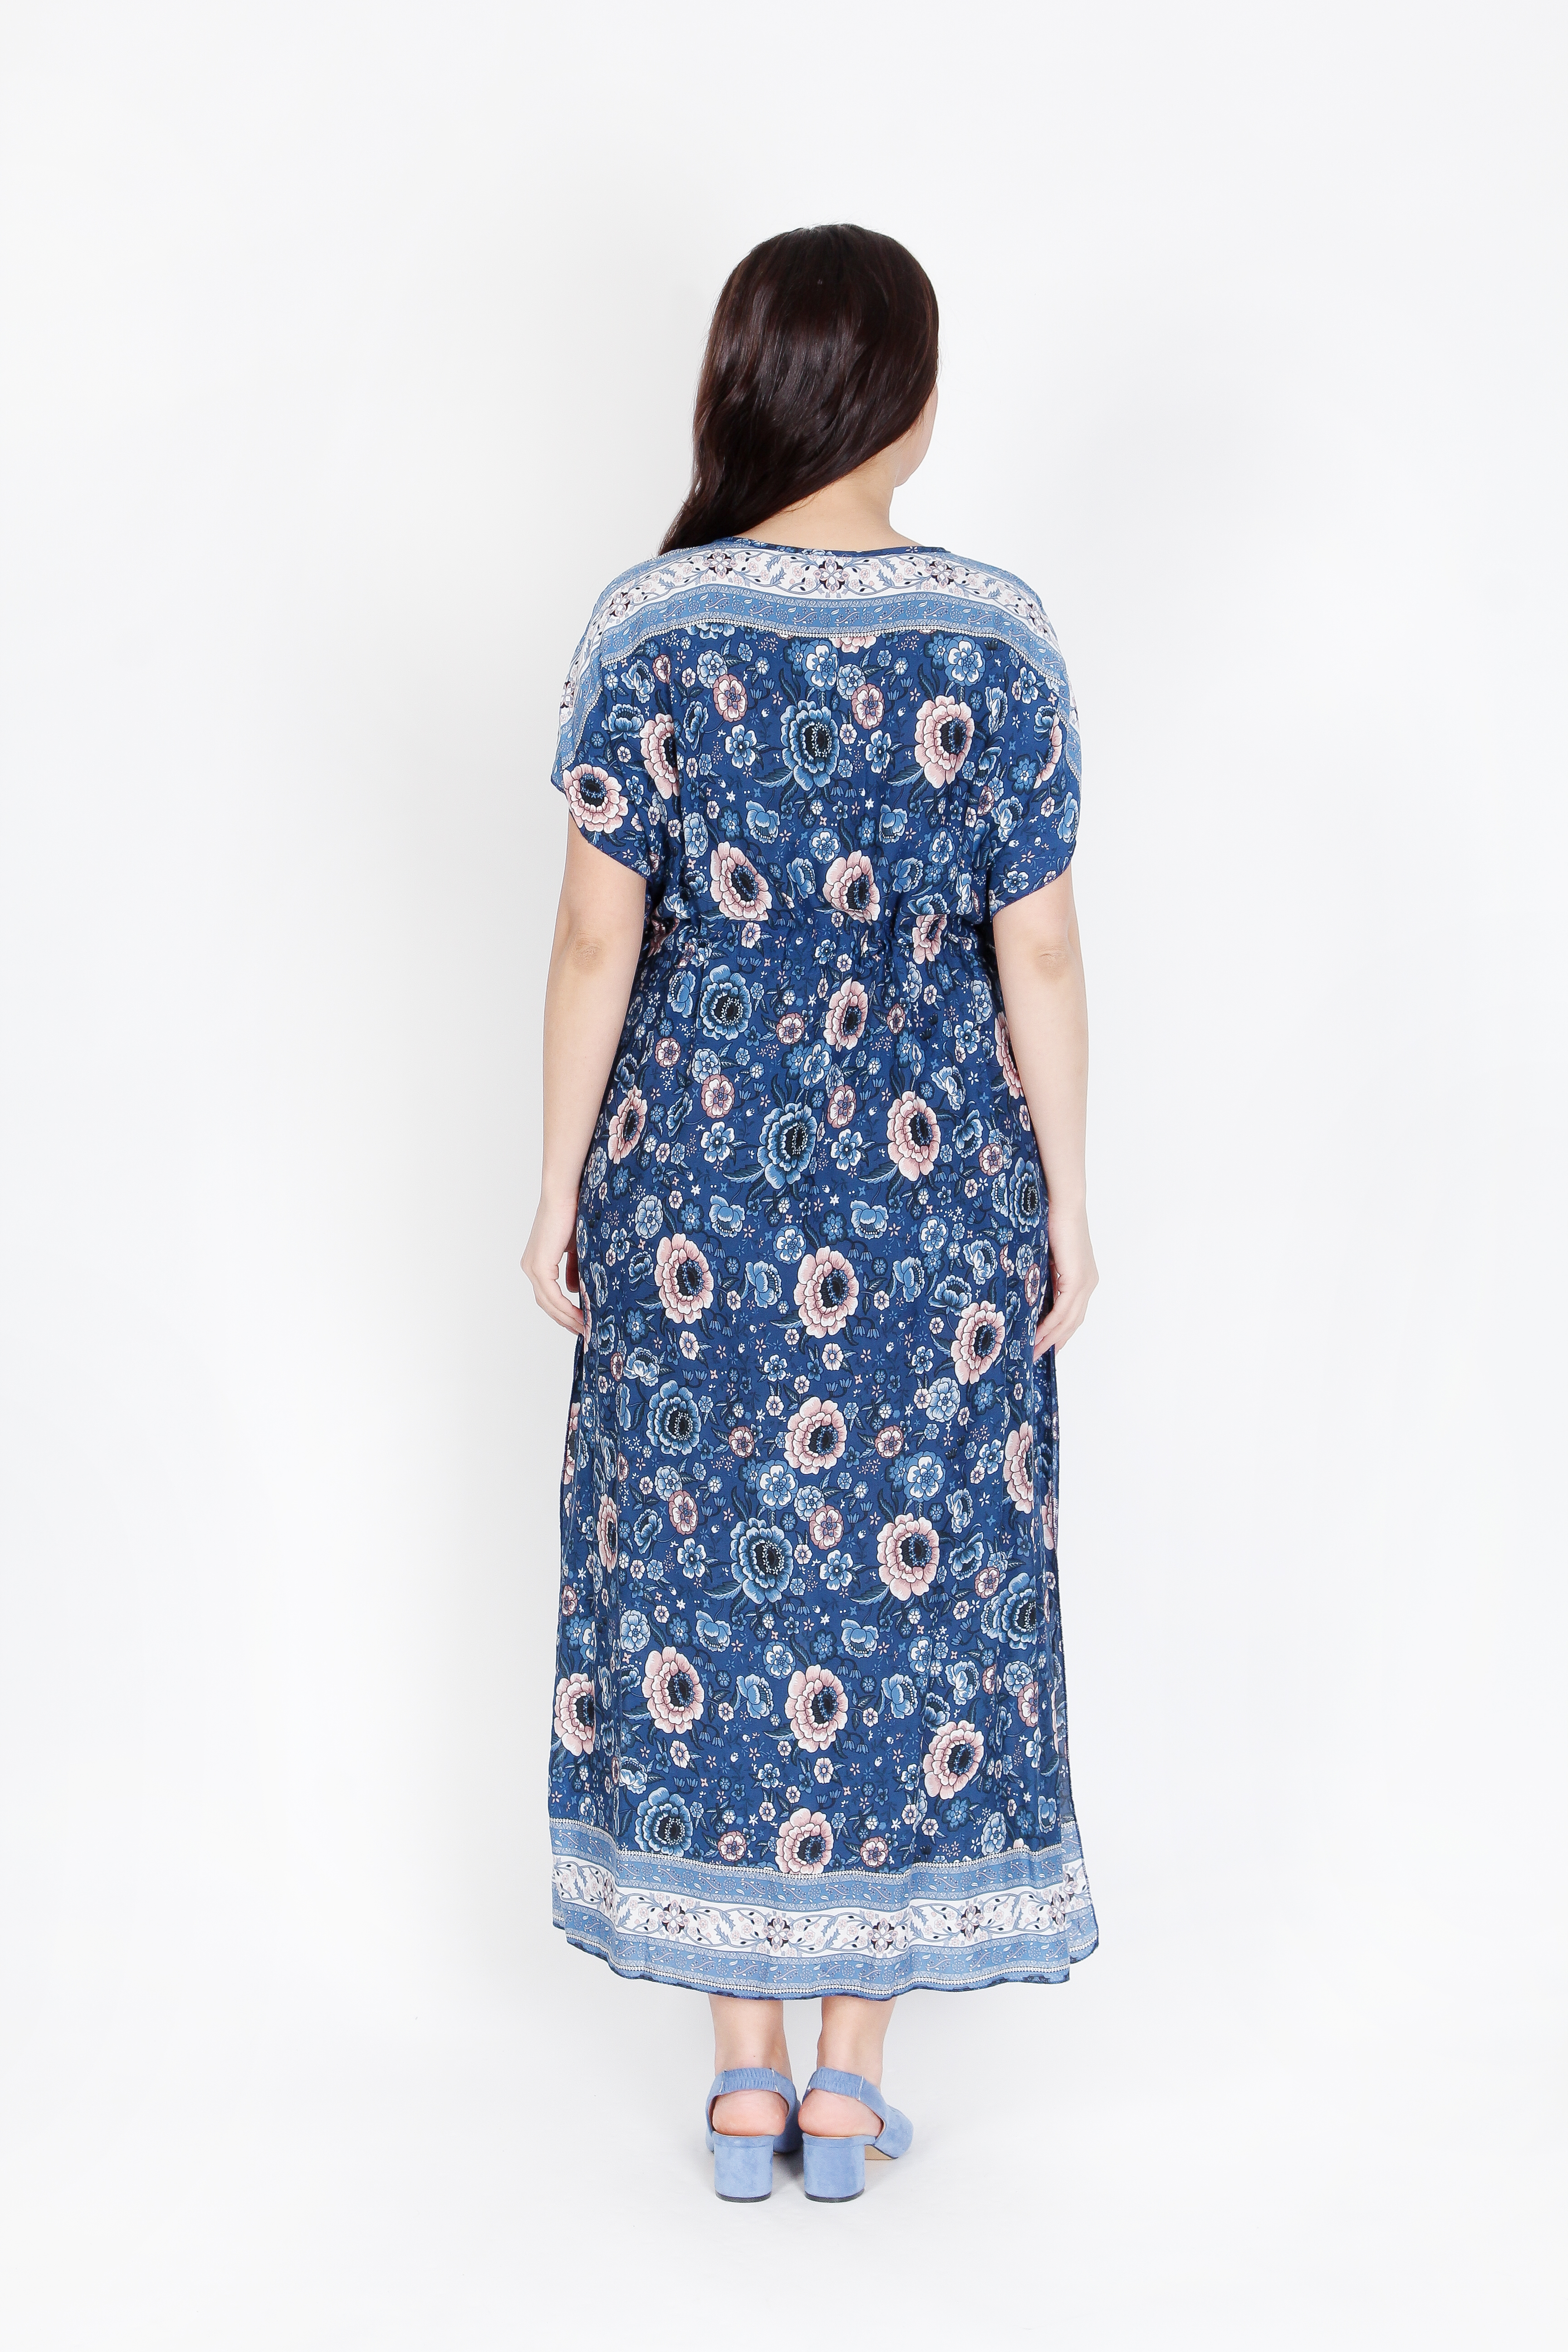 Платье «Ласковый бриз» Rossini, размер 56, цвет синий - фото 4